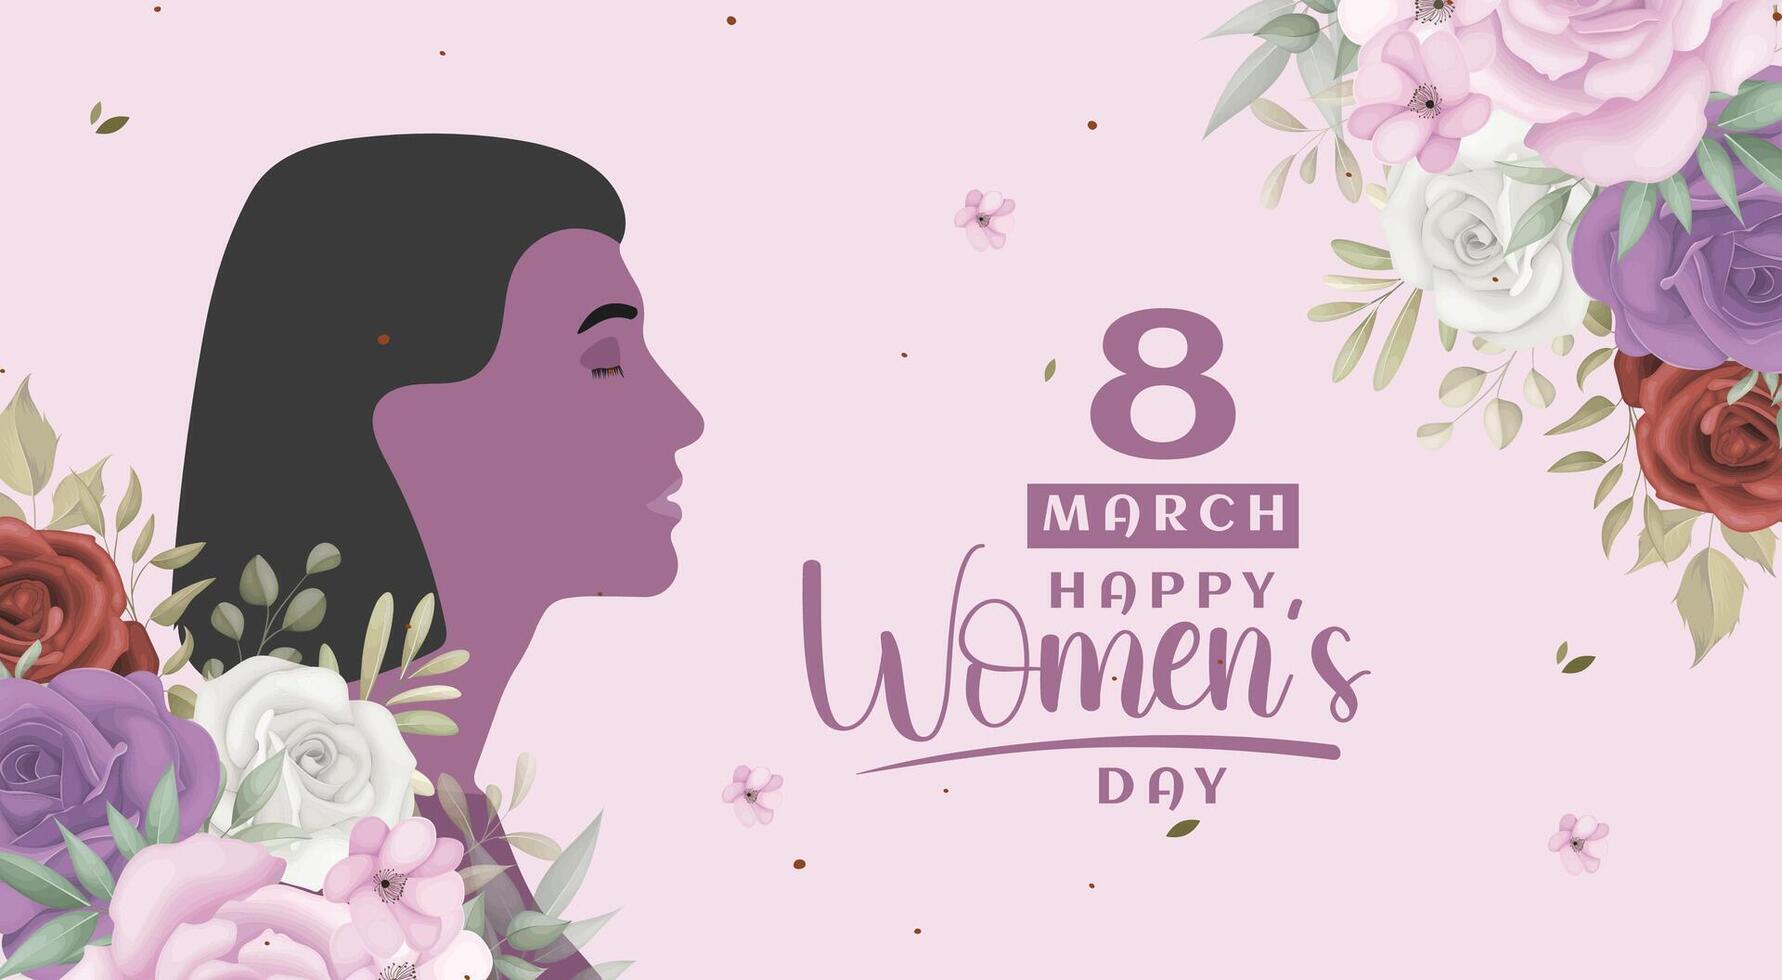 8 marzo De las mujeres día saludo tarjeta diseño con joven mujer ilustración y flor vector